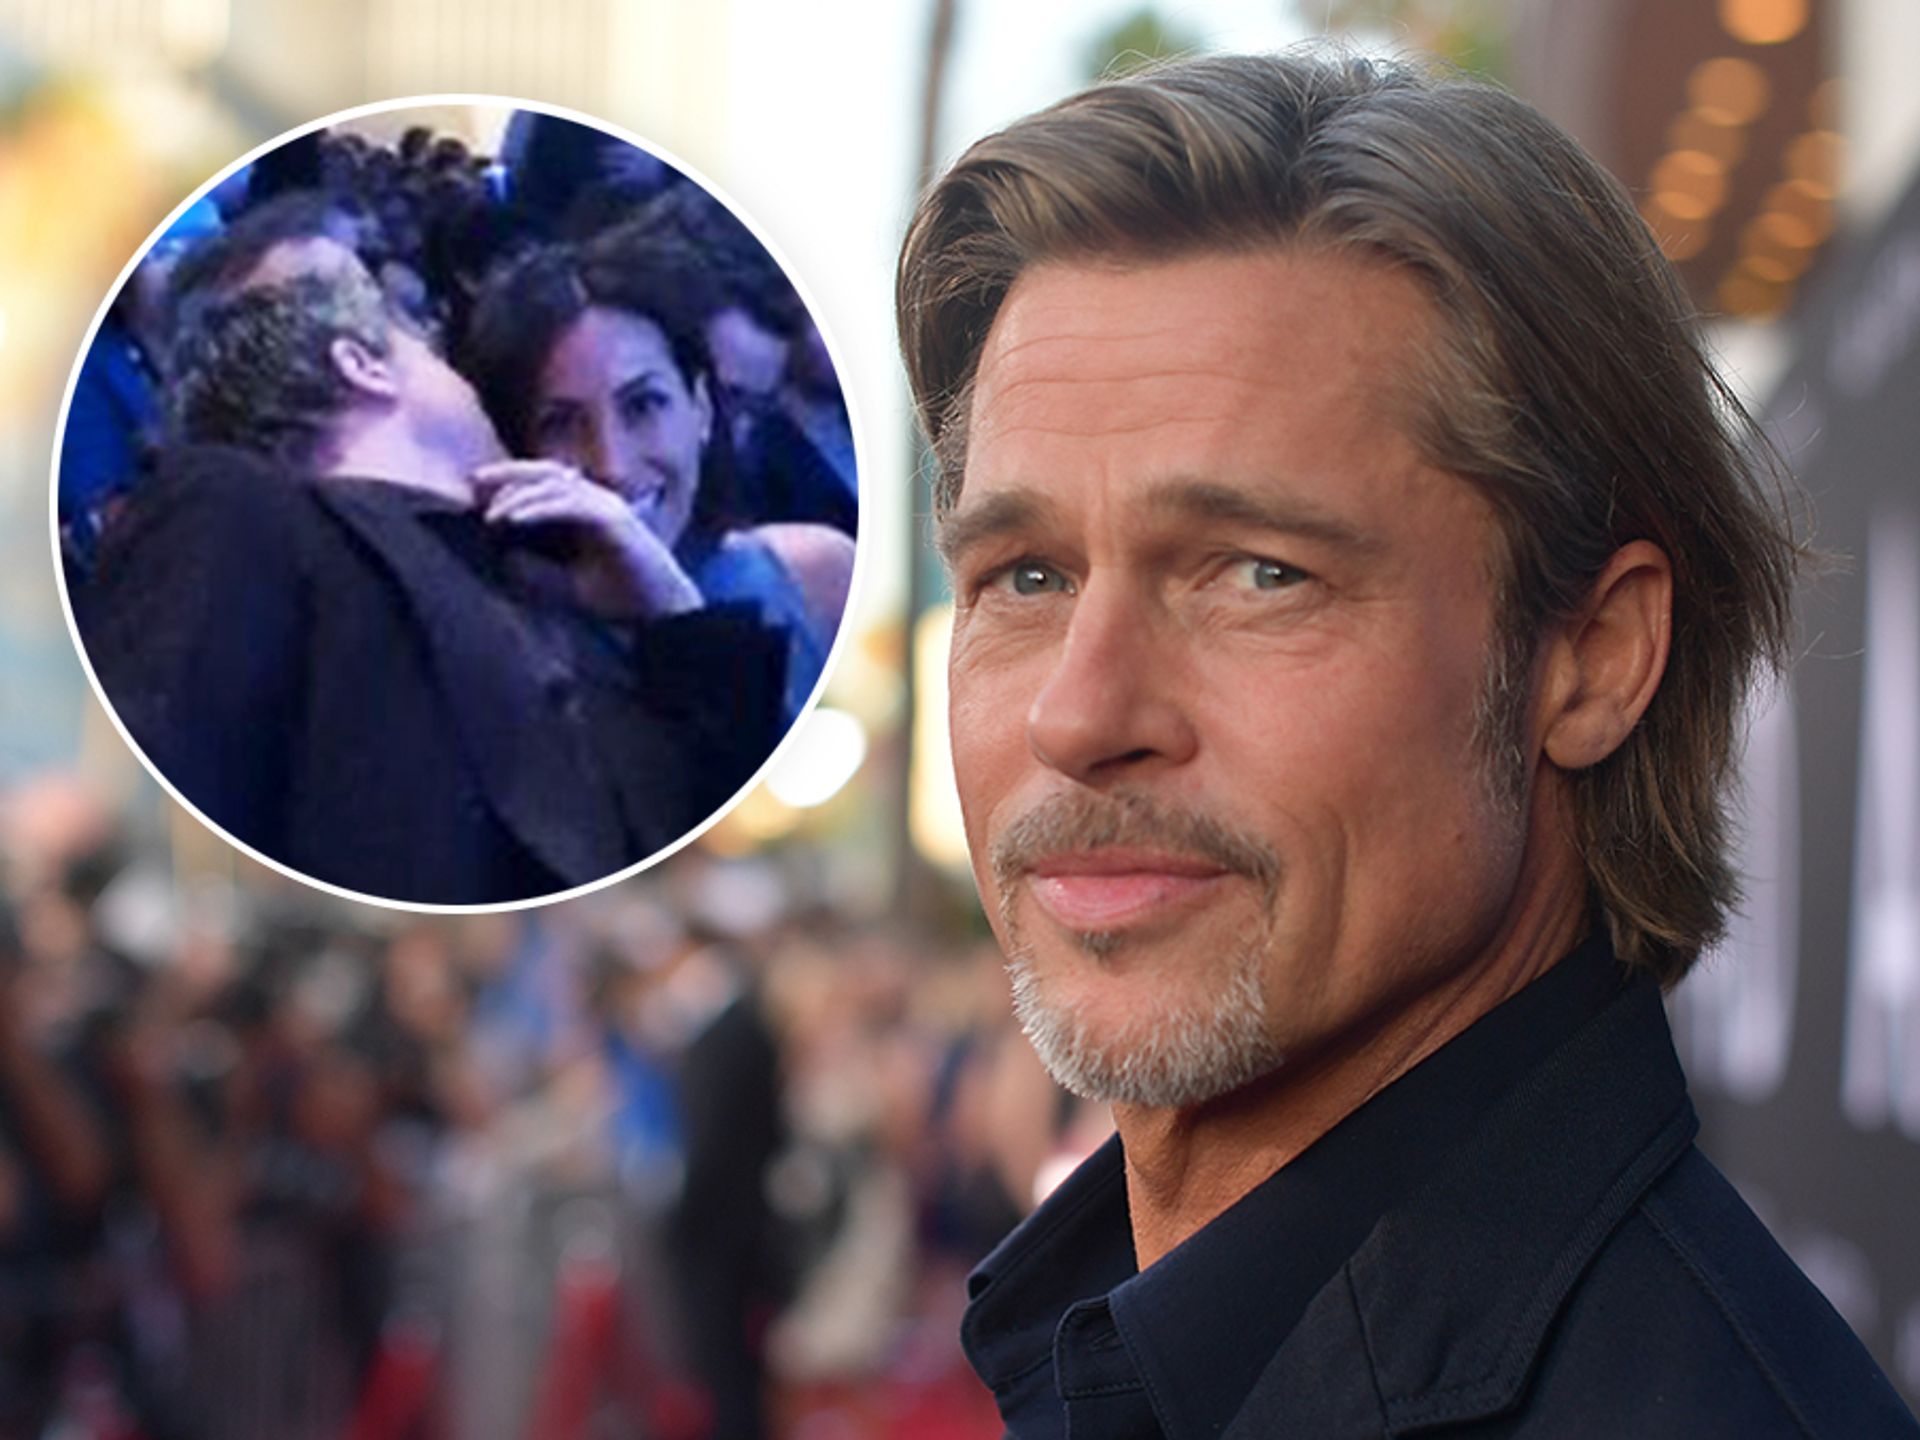 Brad Pitt: Brad Pitt and girlfriend Ines De Ramon to make it